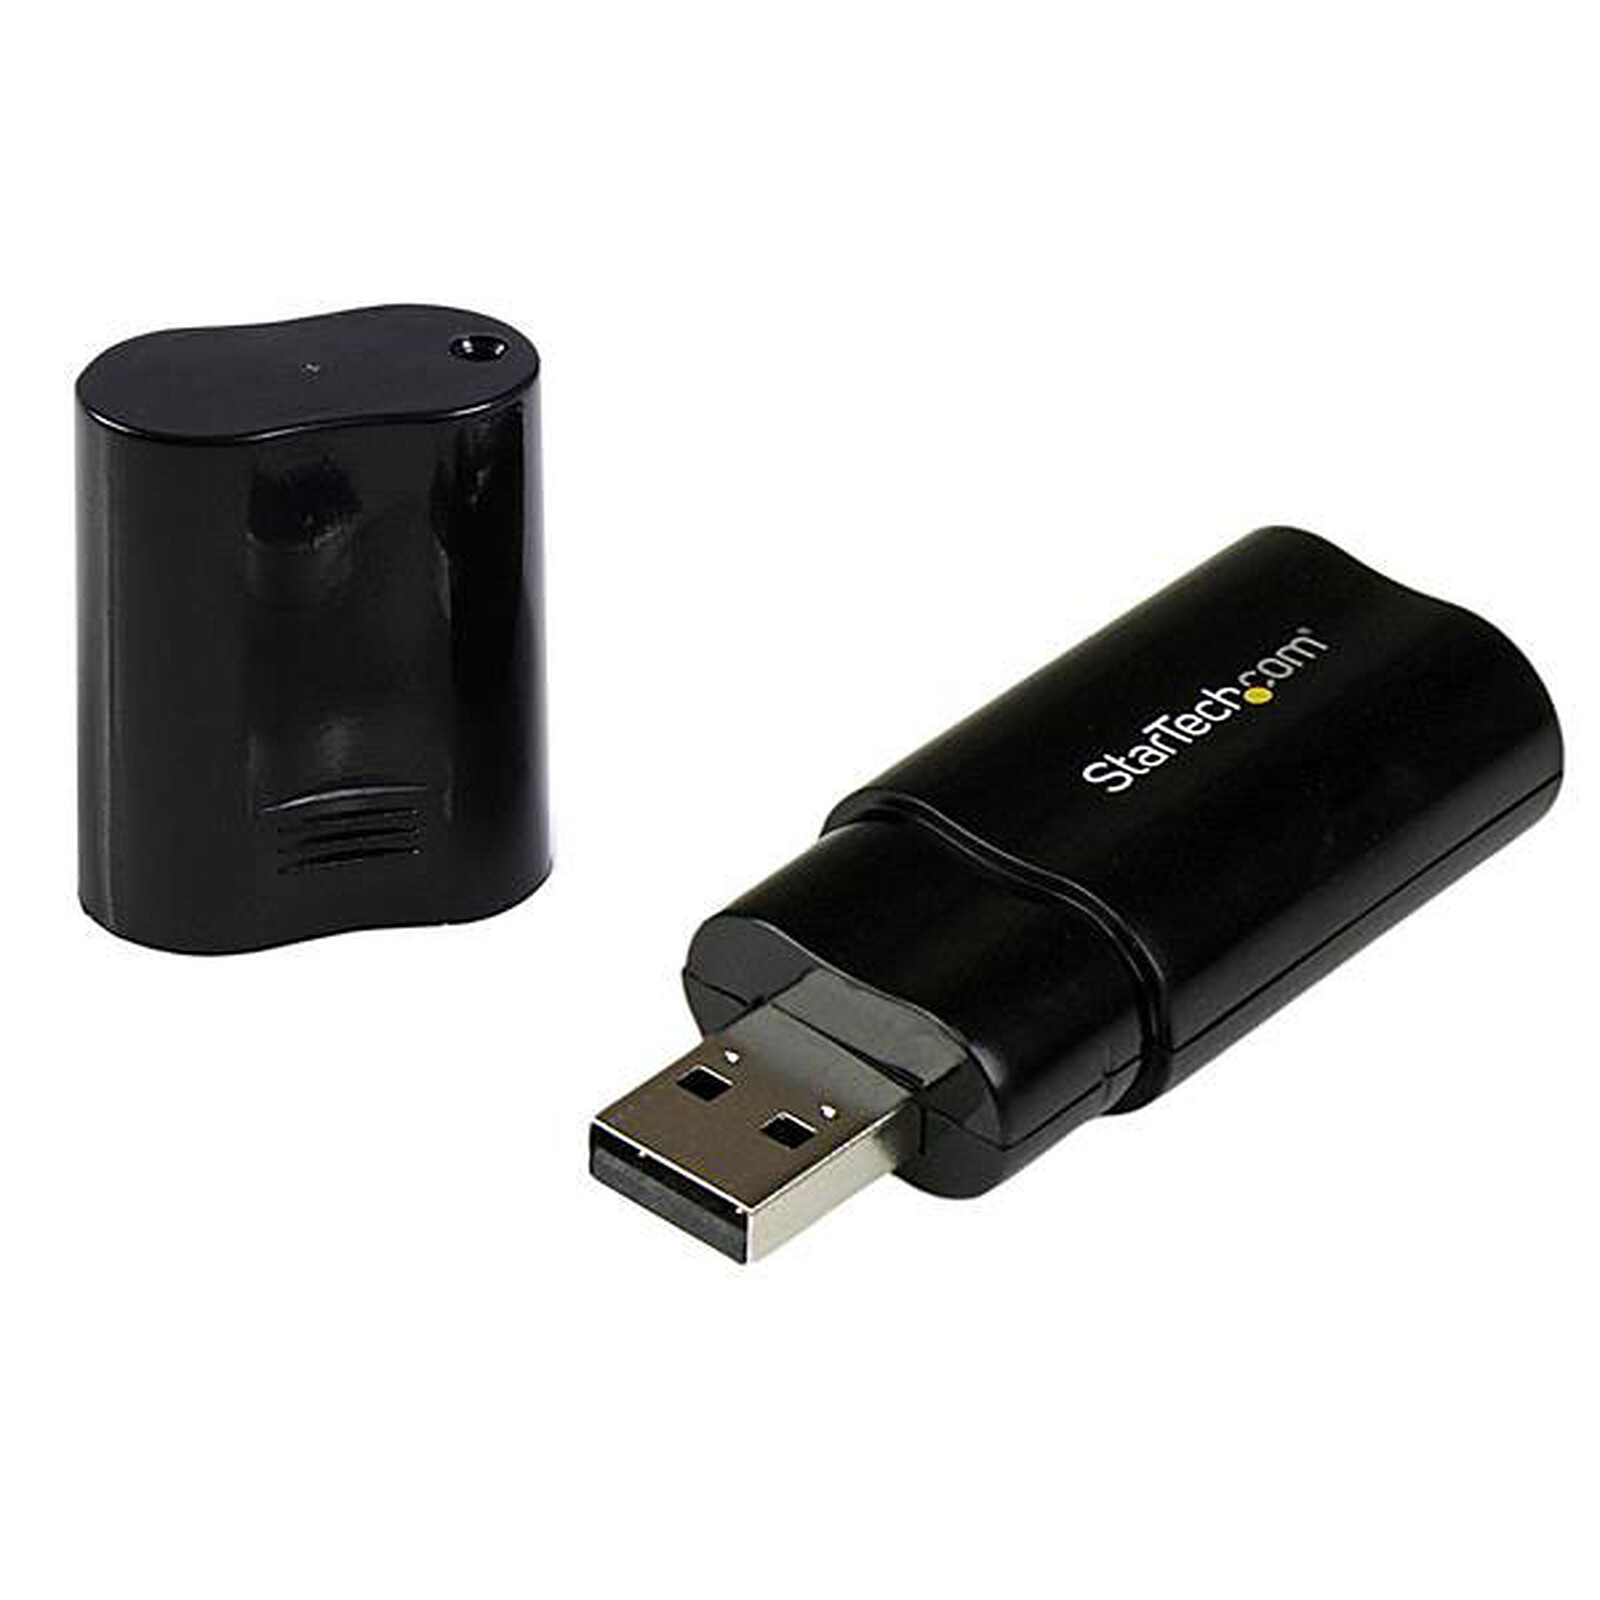 StarTech.com Carte son / Adaptateur audio USB 7.1 avec audio numérique SPDIF